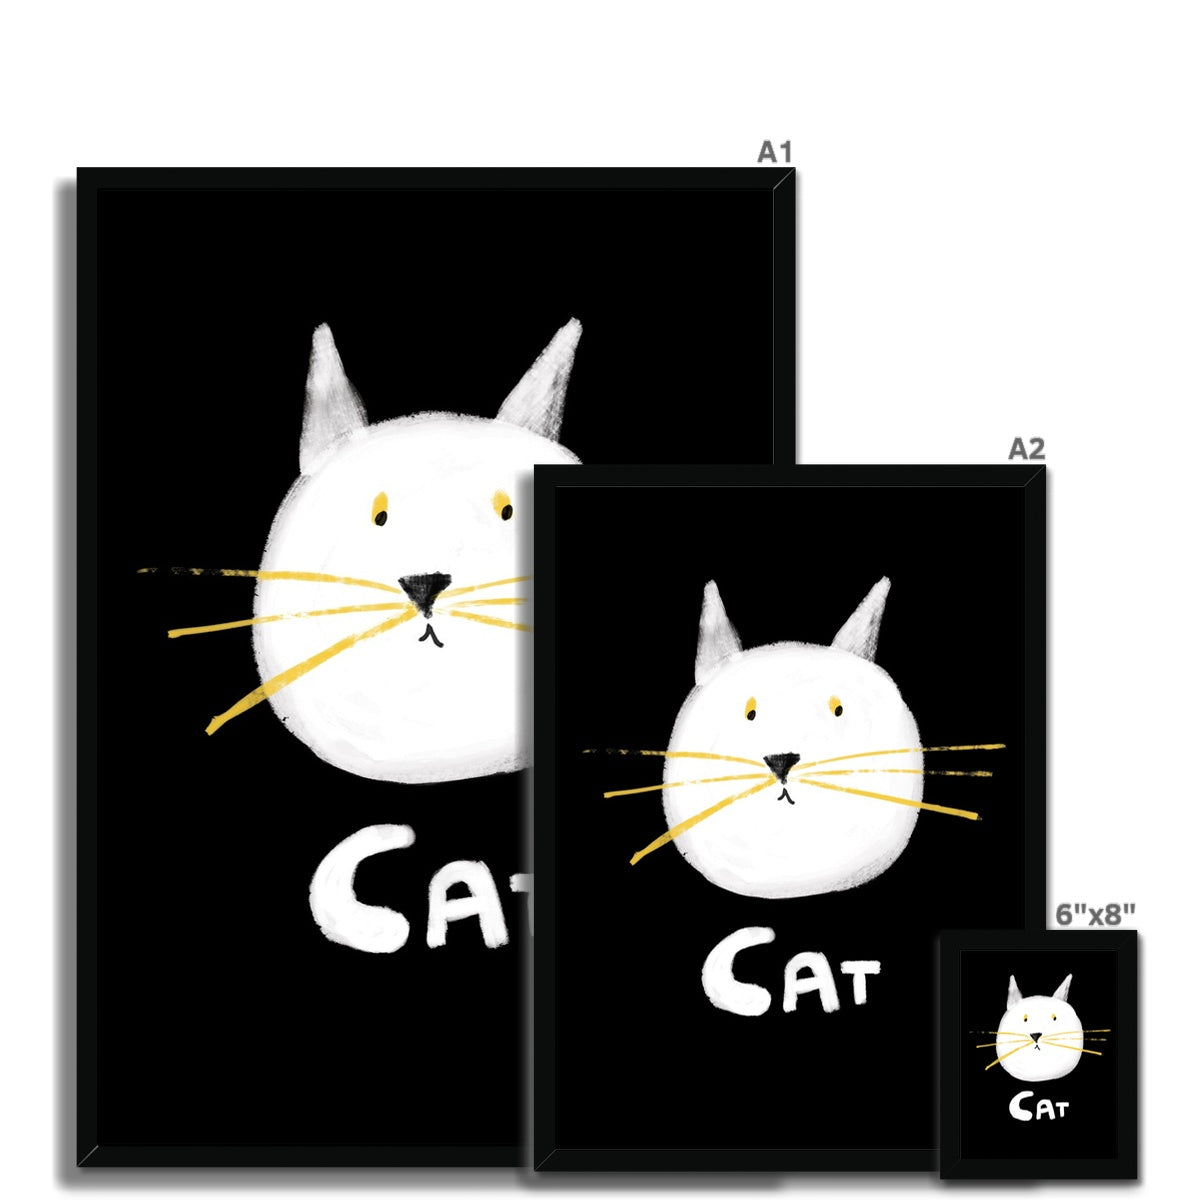 Cat Print - Black with white Framed Print